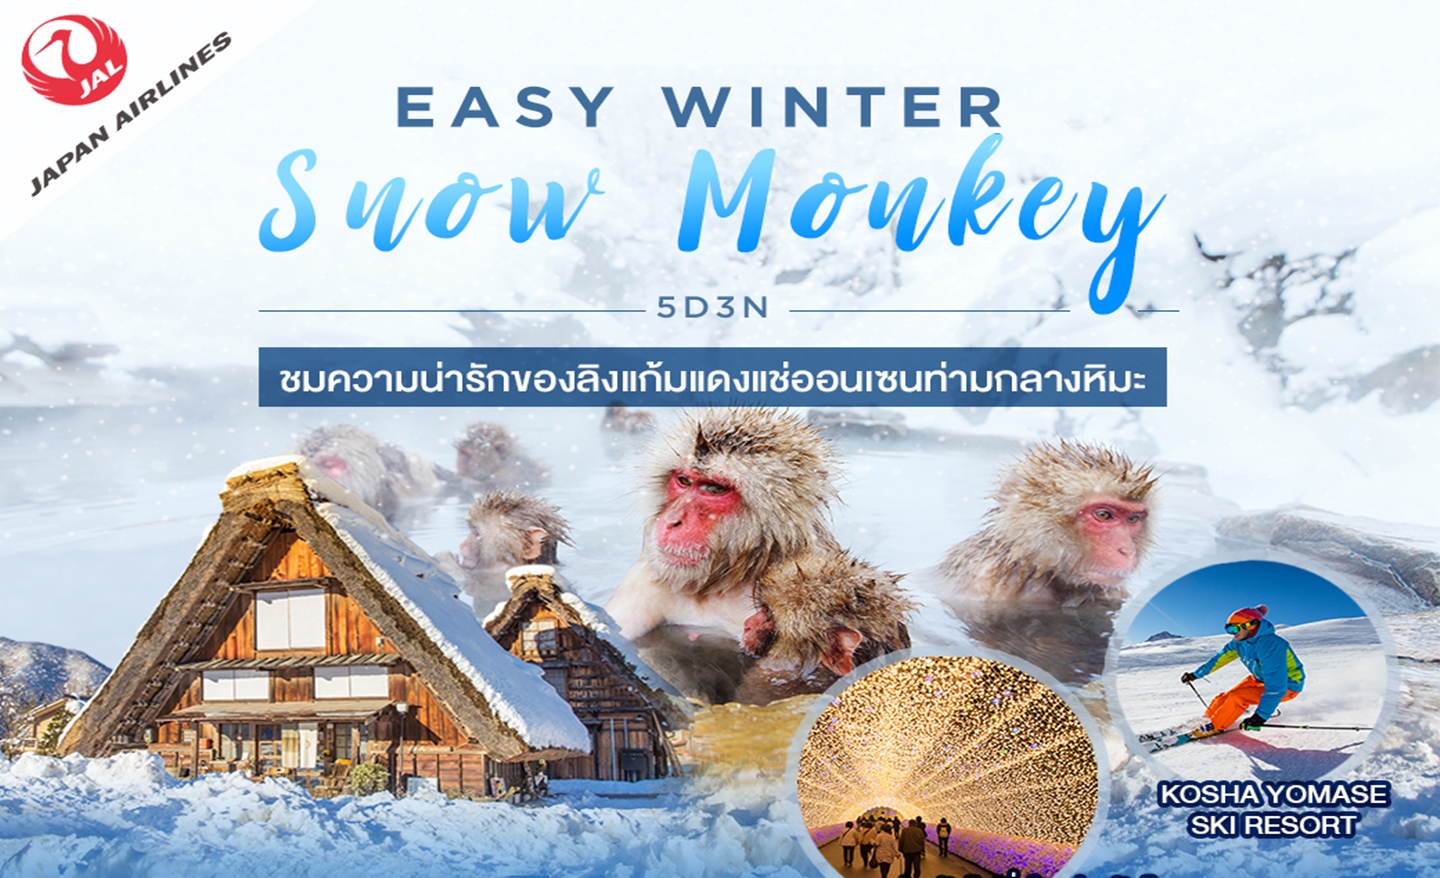 ทัวร์ญี่ปุ่น Easy Winter Snow Monkey 5D3N (ก.พ.-มี.ค.63)